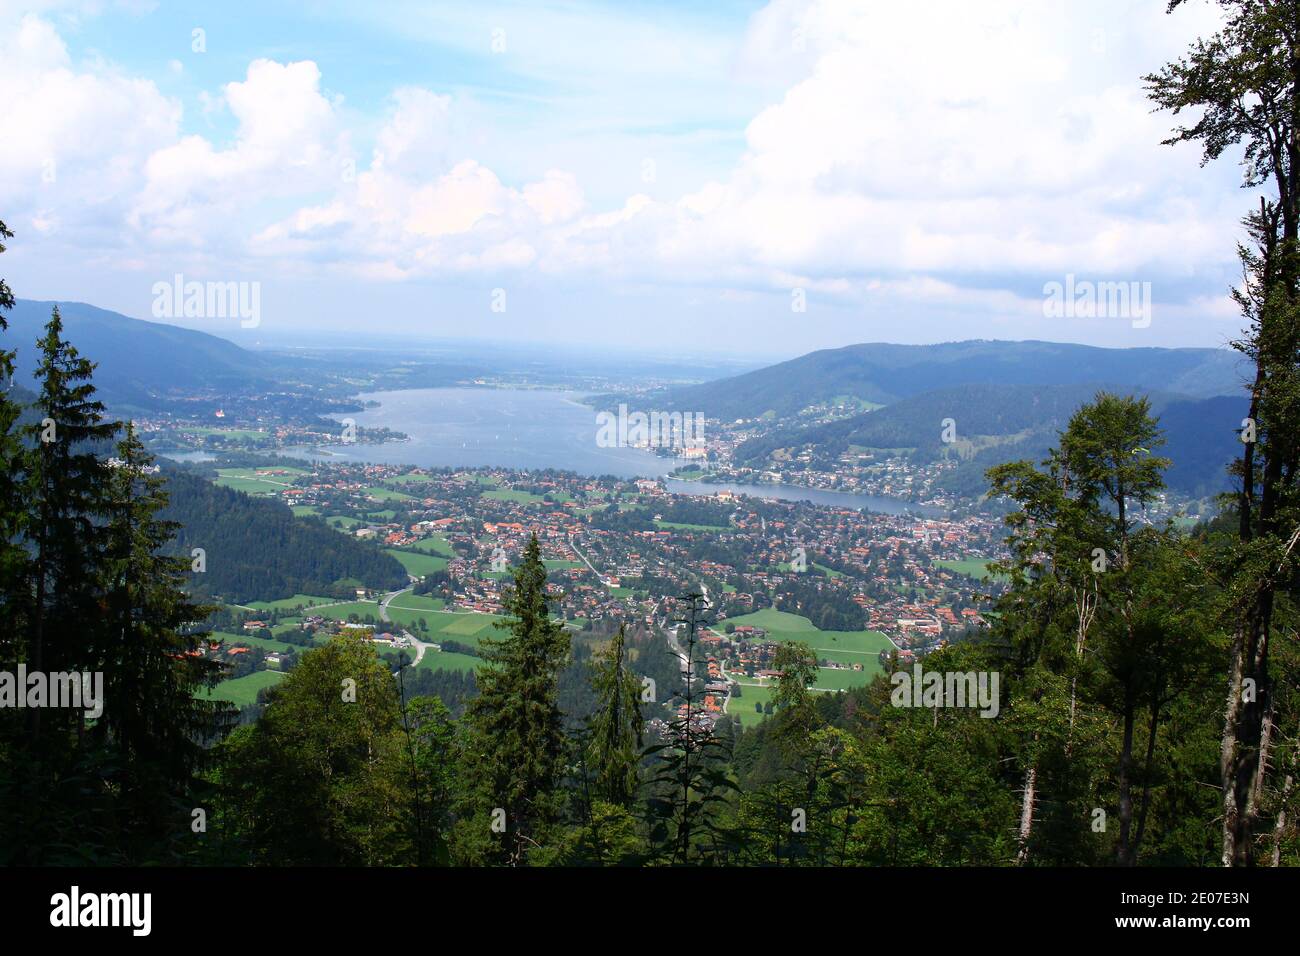 Impressionen vom Tegernsee in Bayern Stock Photo